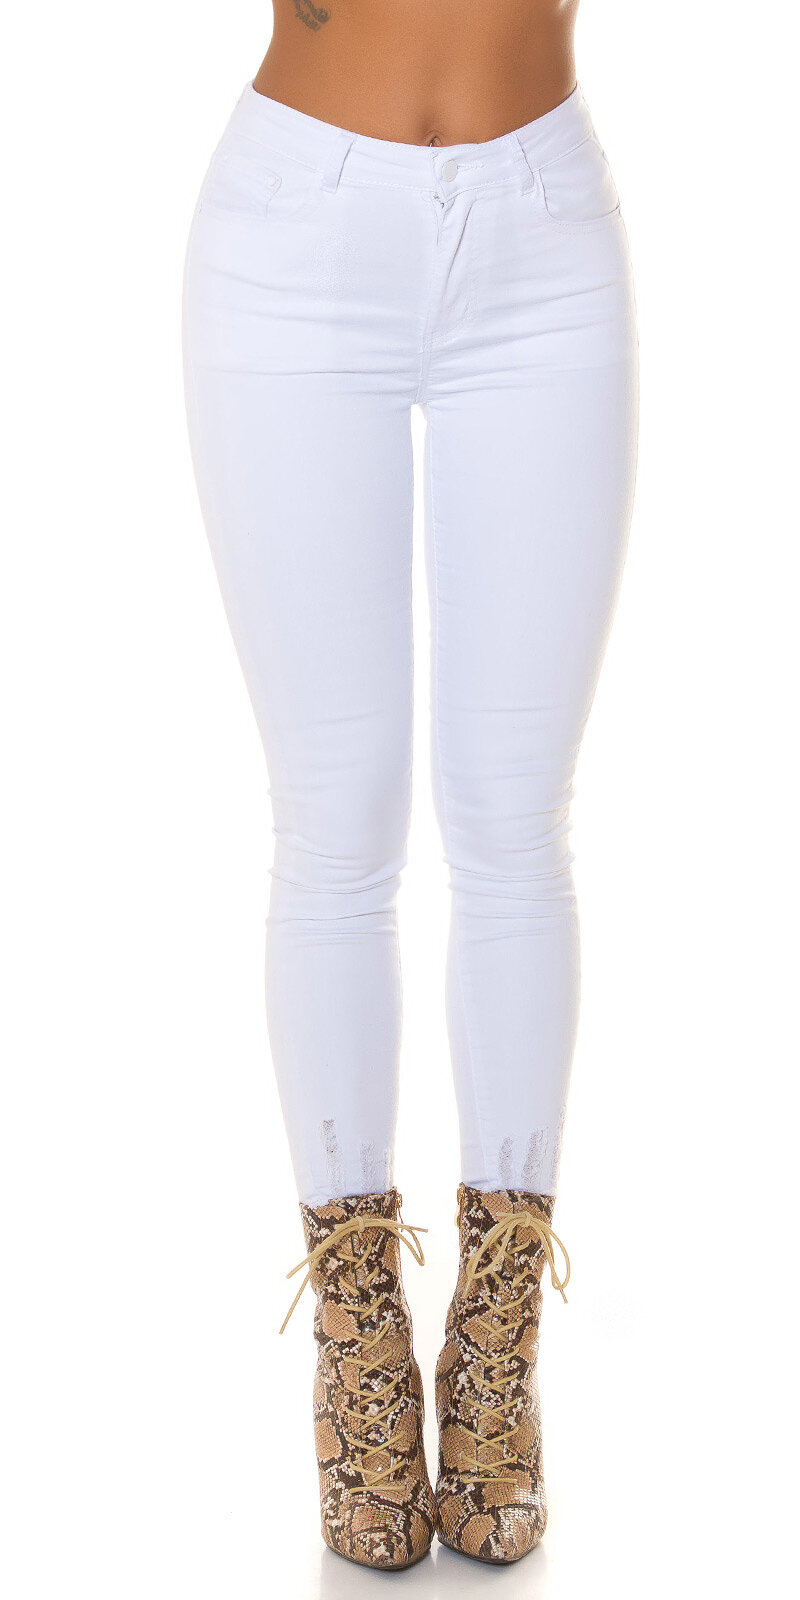 Vysoké biele džíny s rozpáraným švom Biela